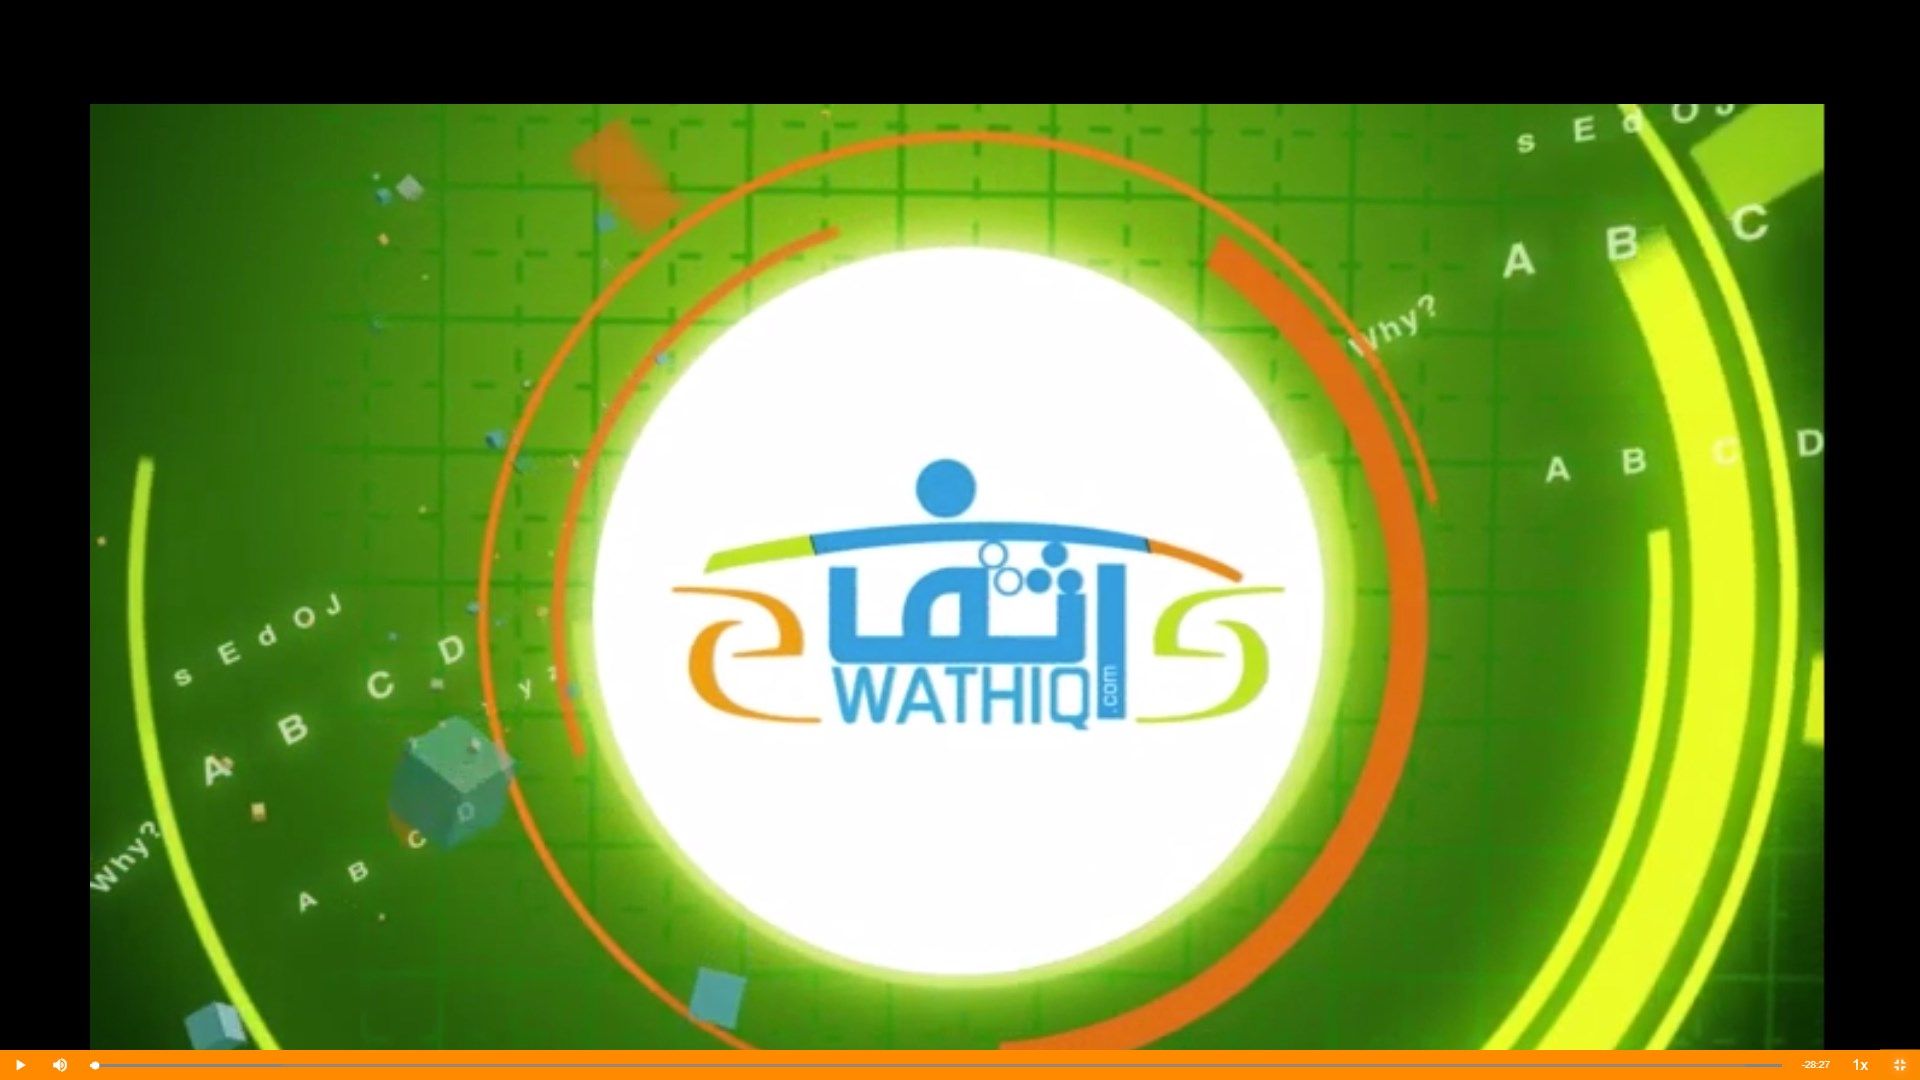 Wathiq Pro